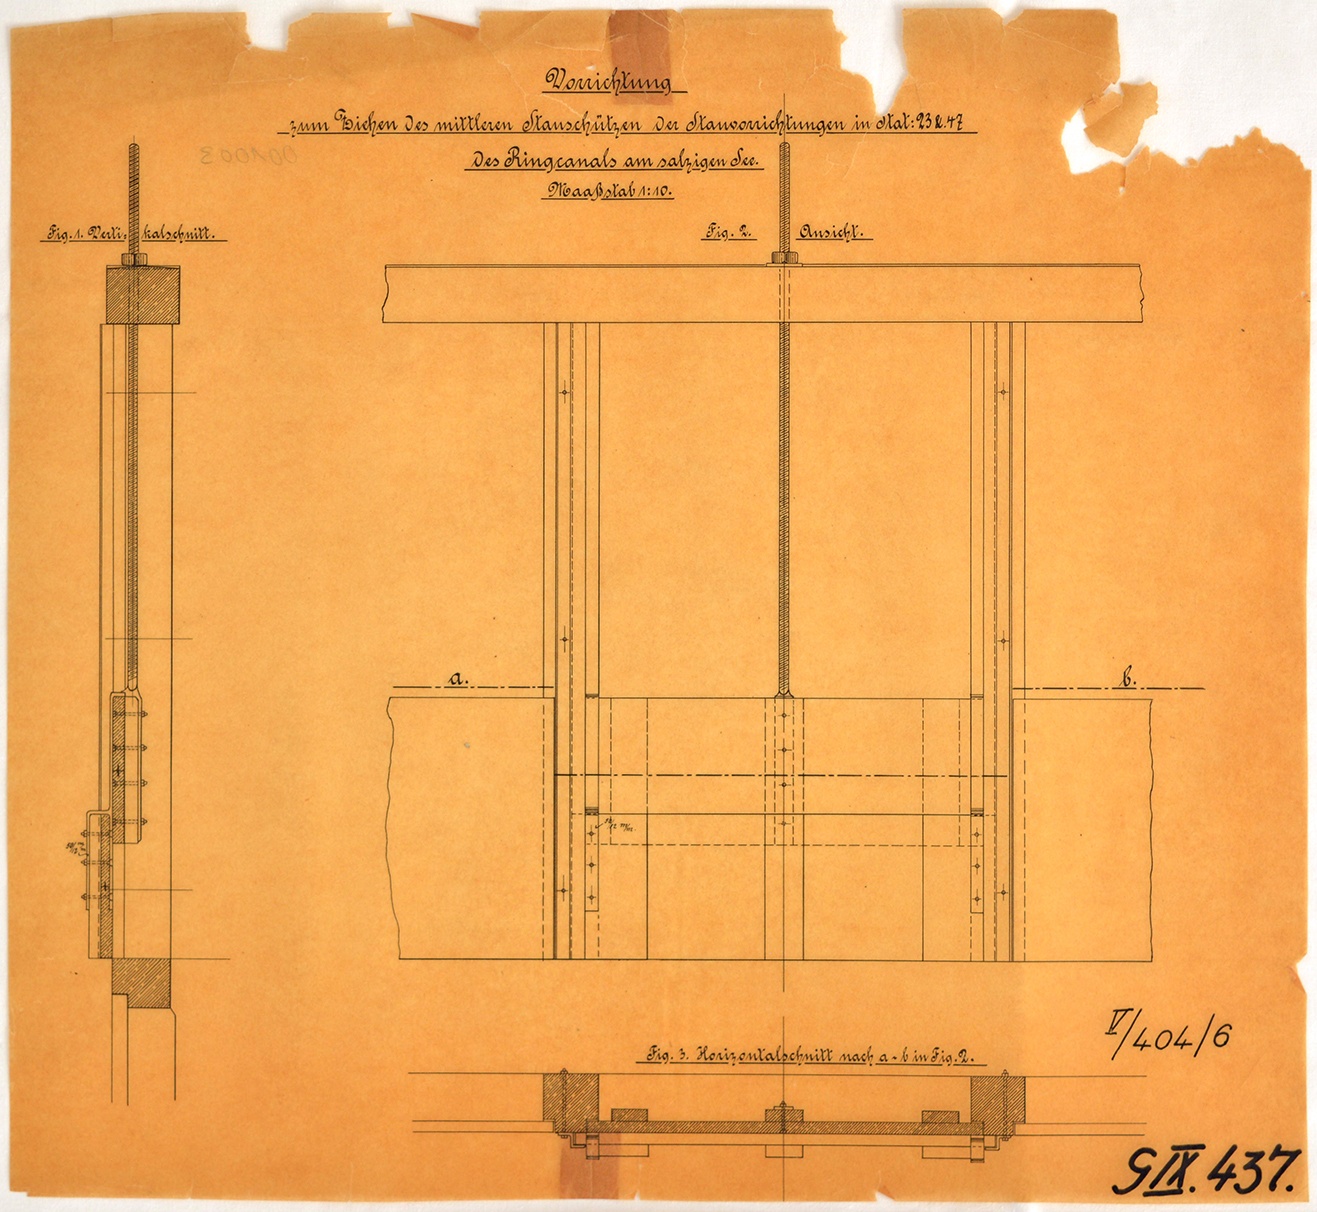 Vorrichtung zum Ziehen des mittleren Stauschützen der Stauvorrichtungen in Stat: 23 &. 47 des Ringcanals am salzigen See. (Mansfeld-Museum im Humboldt-Schloss CC BY-NC-SA)